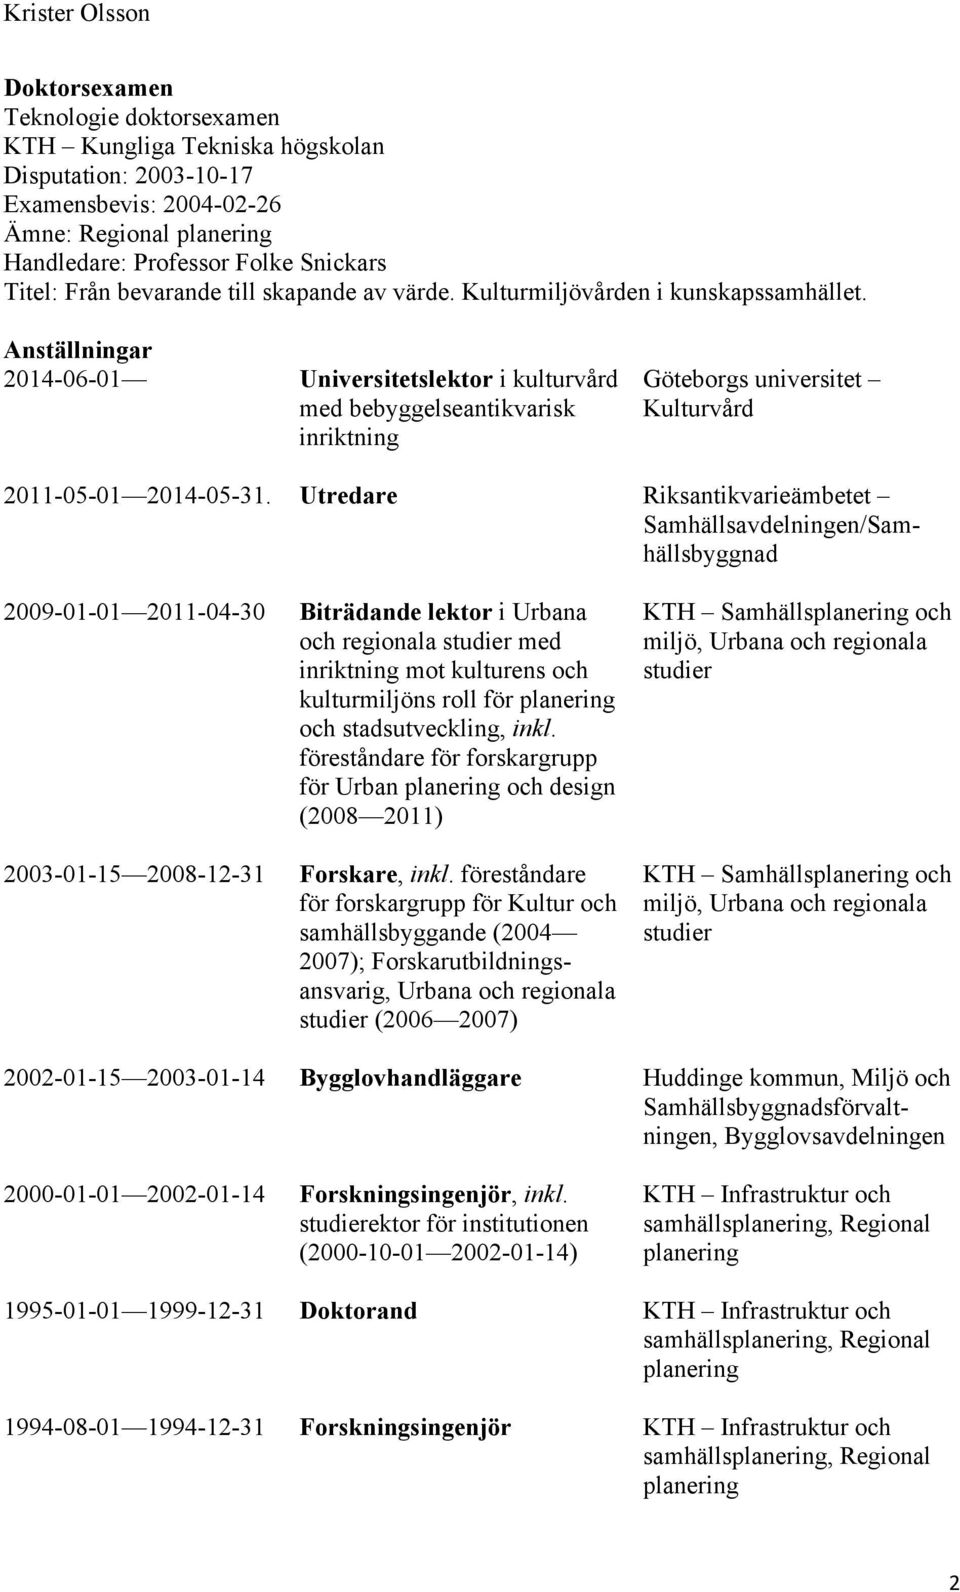 Anställningar 2014-06-01 Universitetslektor i kulturvård med bebyggelseantikvarisk inriktning Göteborgs universitet Kulturvård 2011-05-01 2014-05-31.